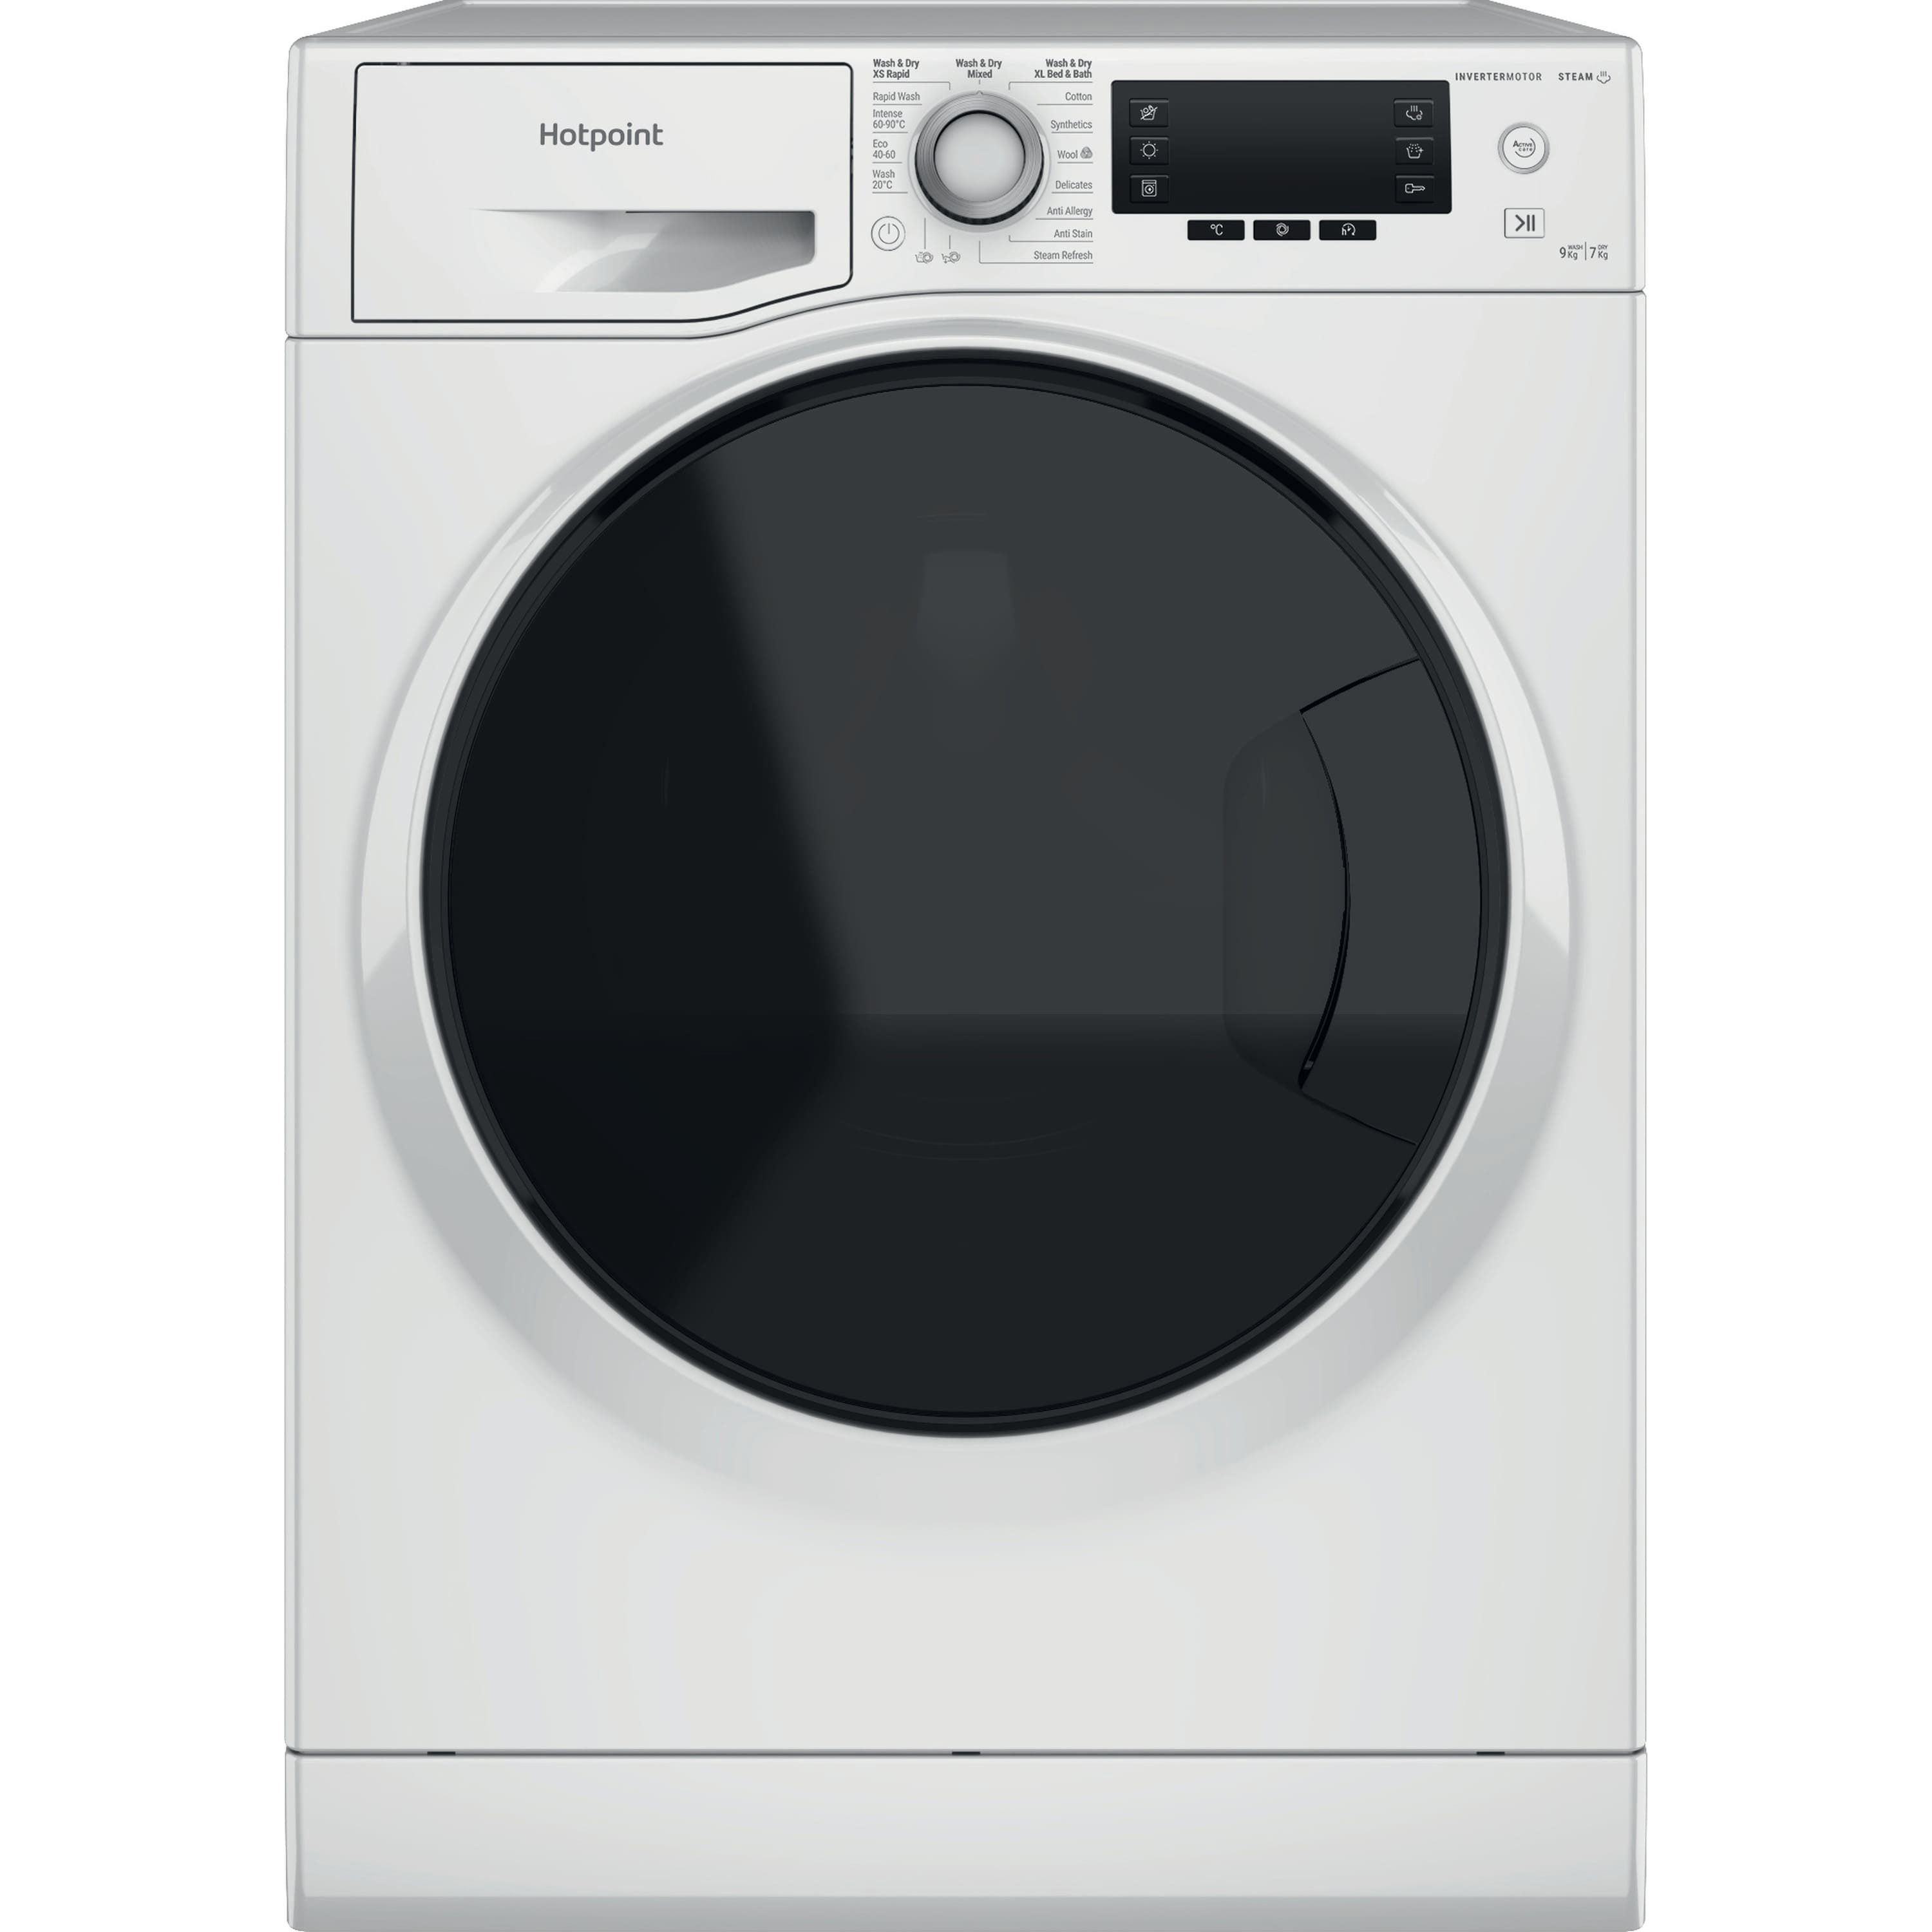 Resin Dryer Machine, Resin Dryers, Plastic Scrap Washing And Drying Machine